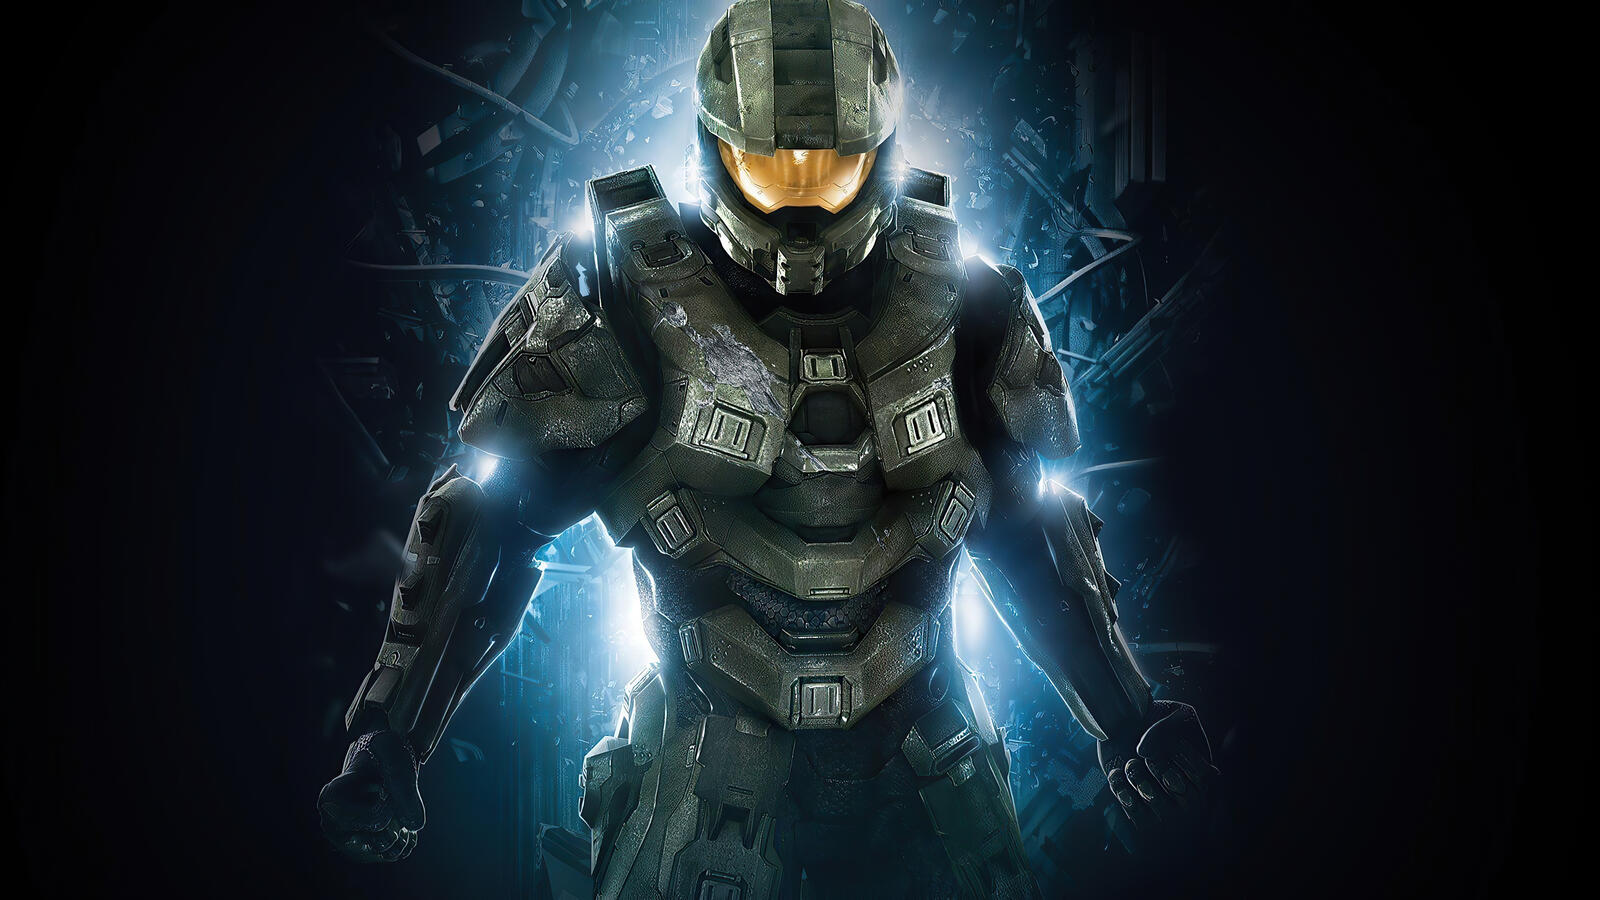 Бесплатное фото Робот из игры Halo